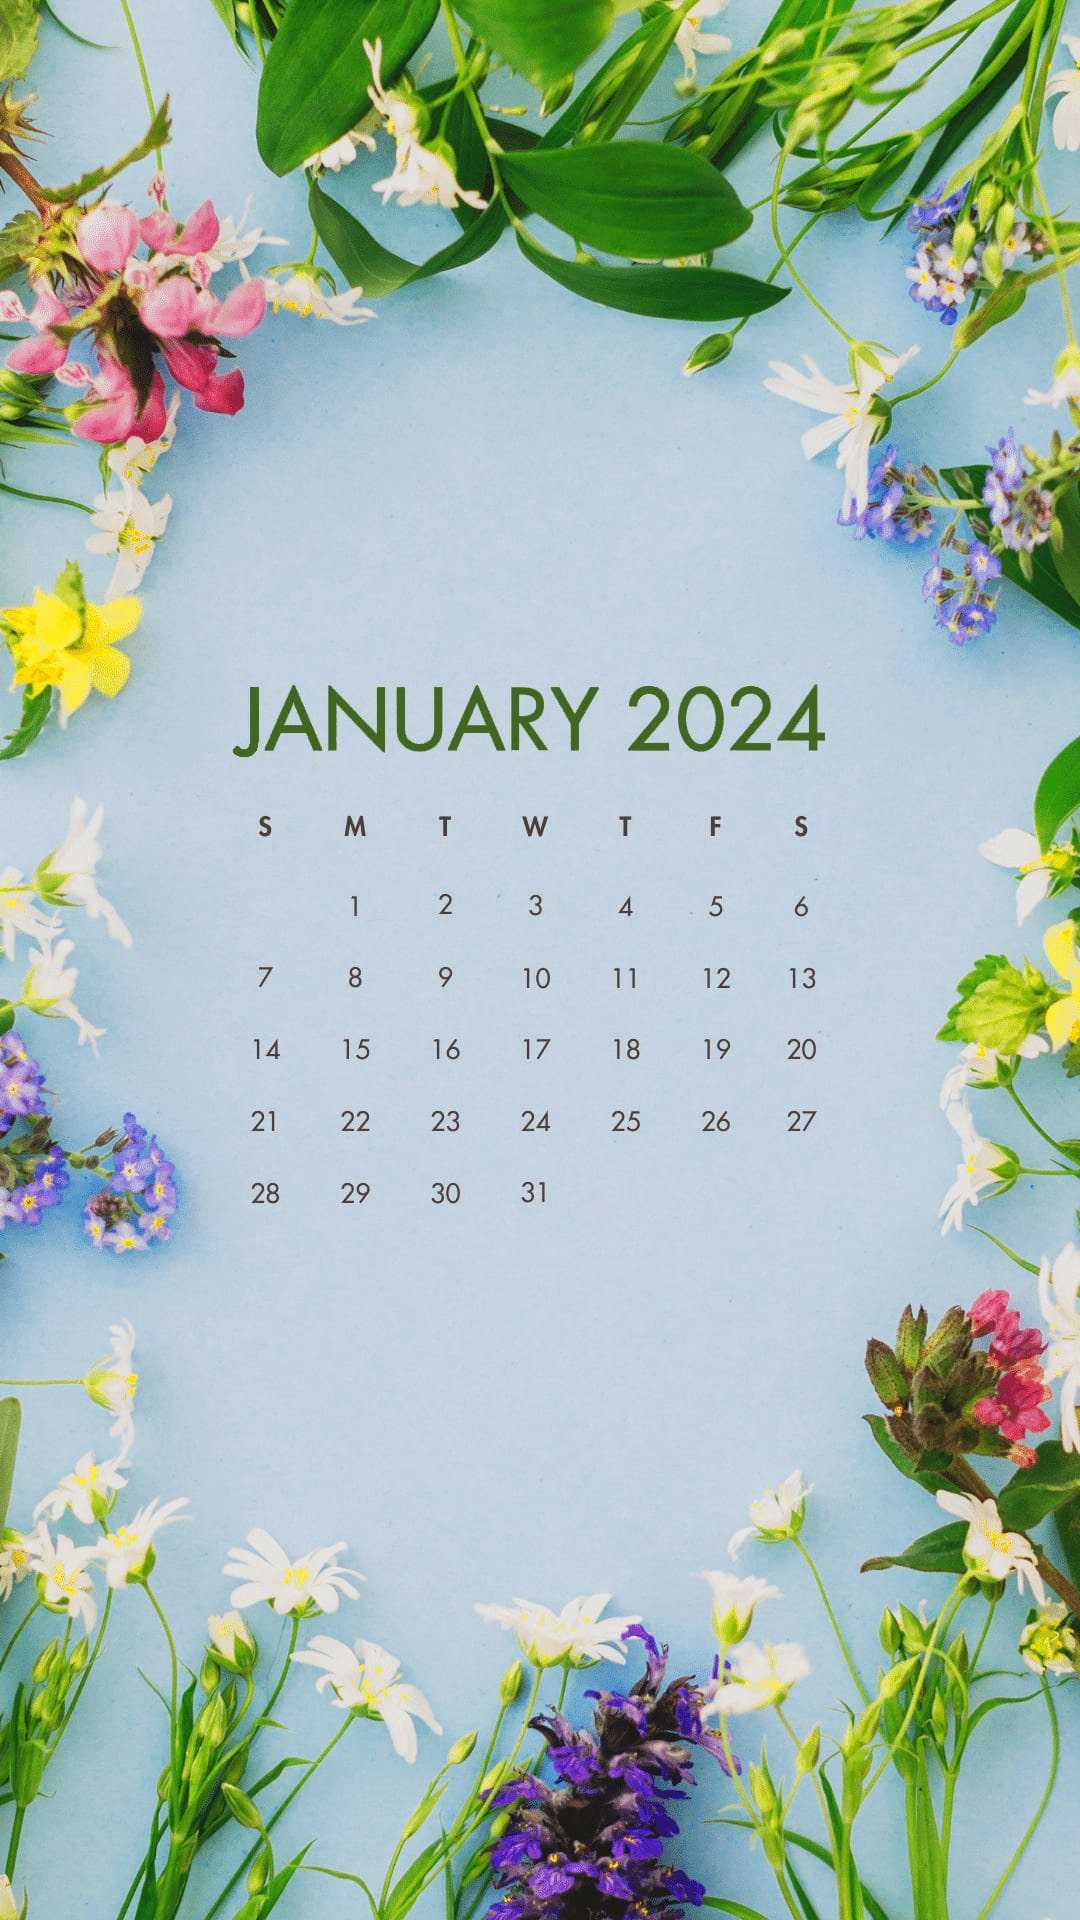 January 2024 Calendar Wallpaper iXpap